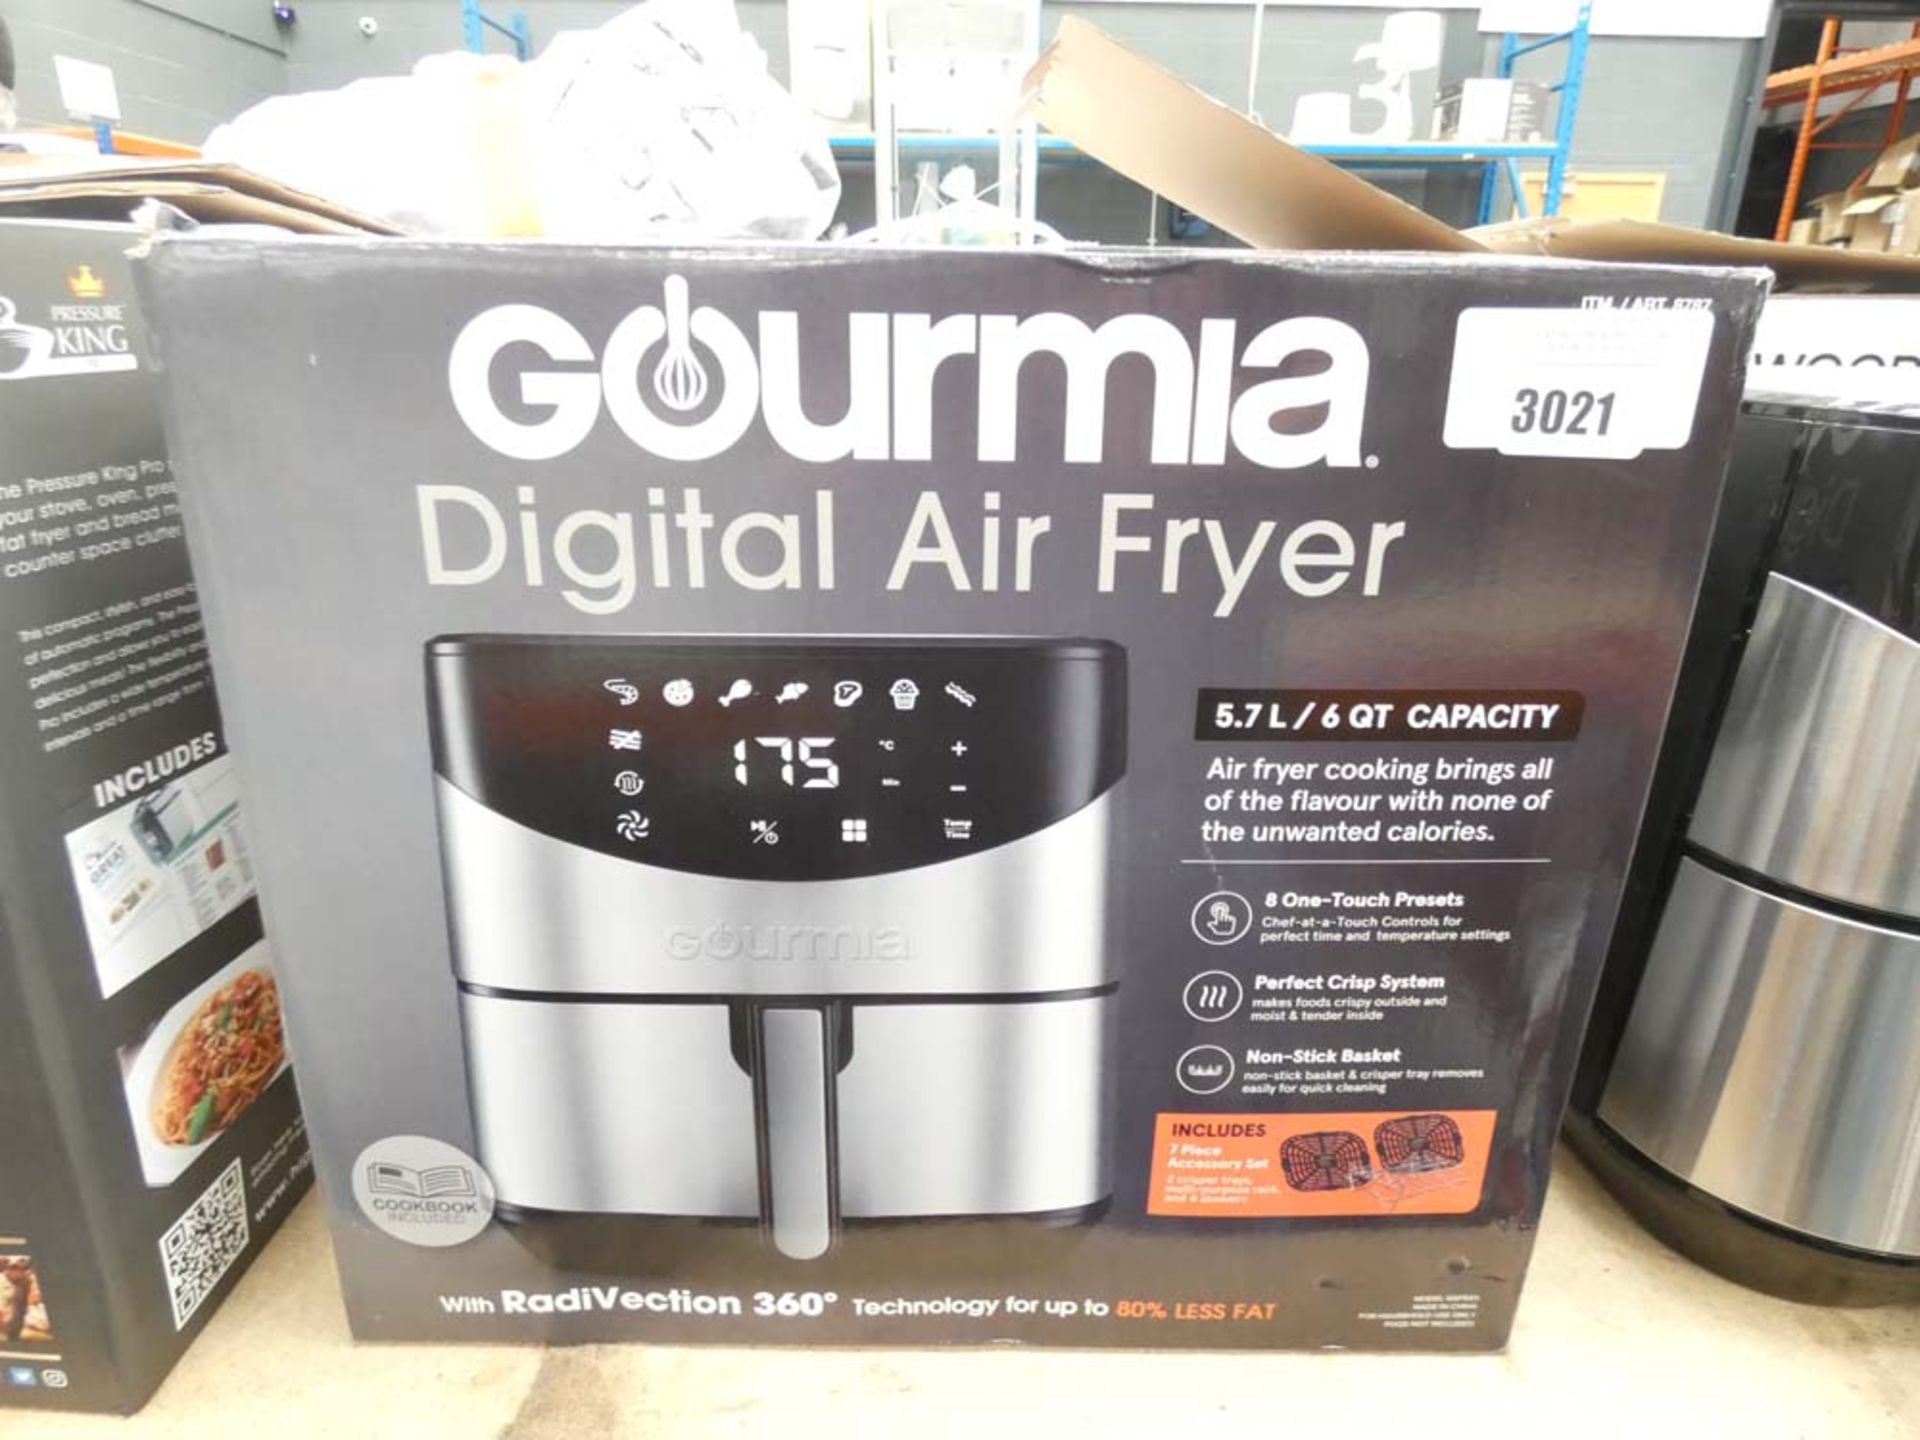 Boxed Gourmet digital air fryer